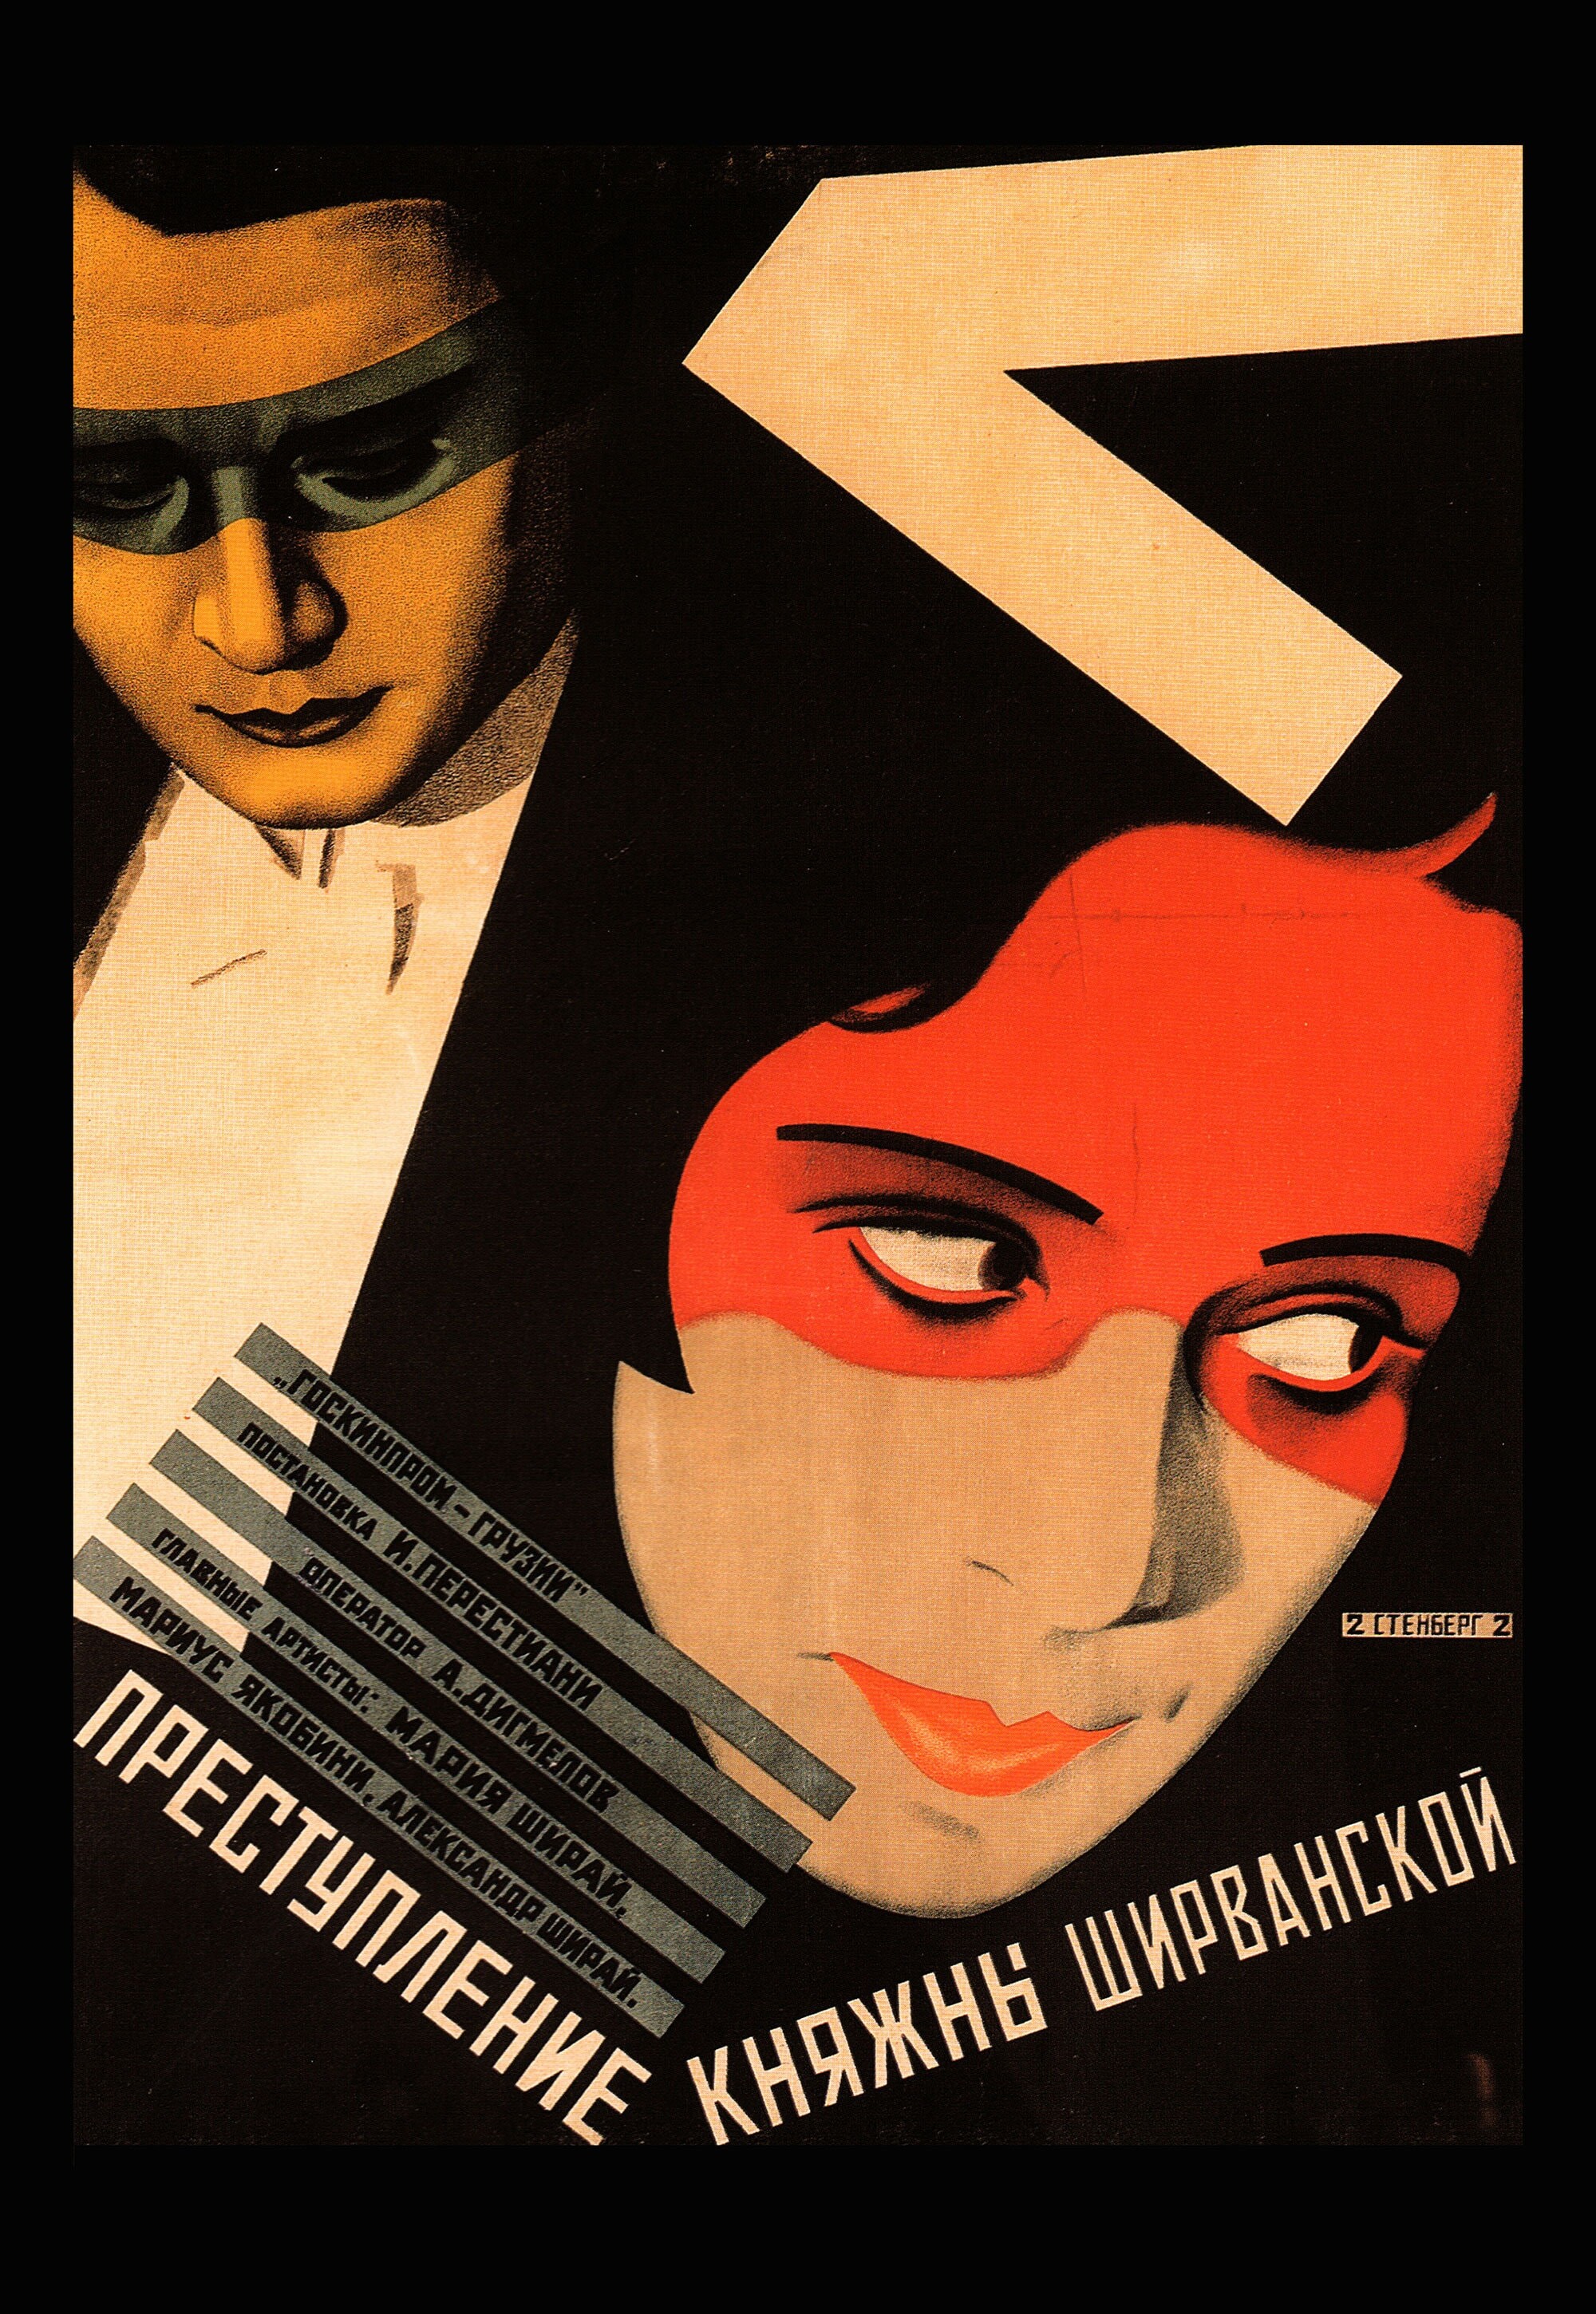 Преступление княжны Ширванской, 1926 год, режиссёр Иван Перестиани, плакат к фильму, авторы Владимир и Георгий Стенберги (авангардное советское искусство, 1920-е)